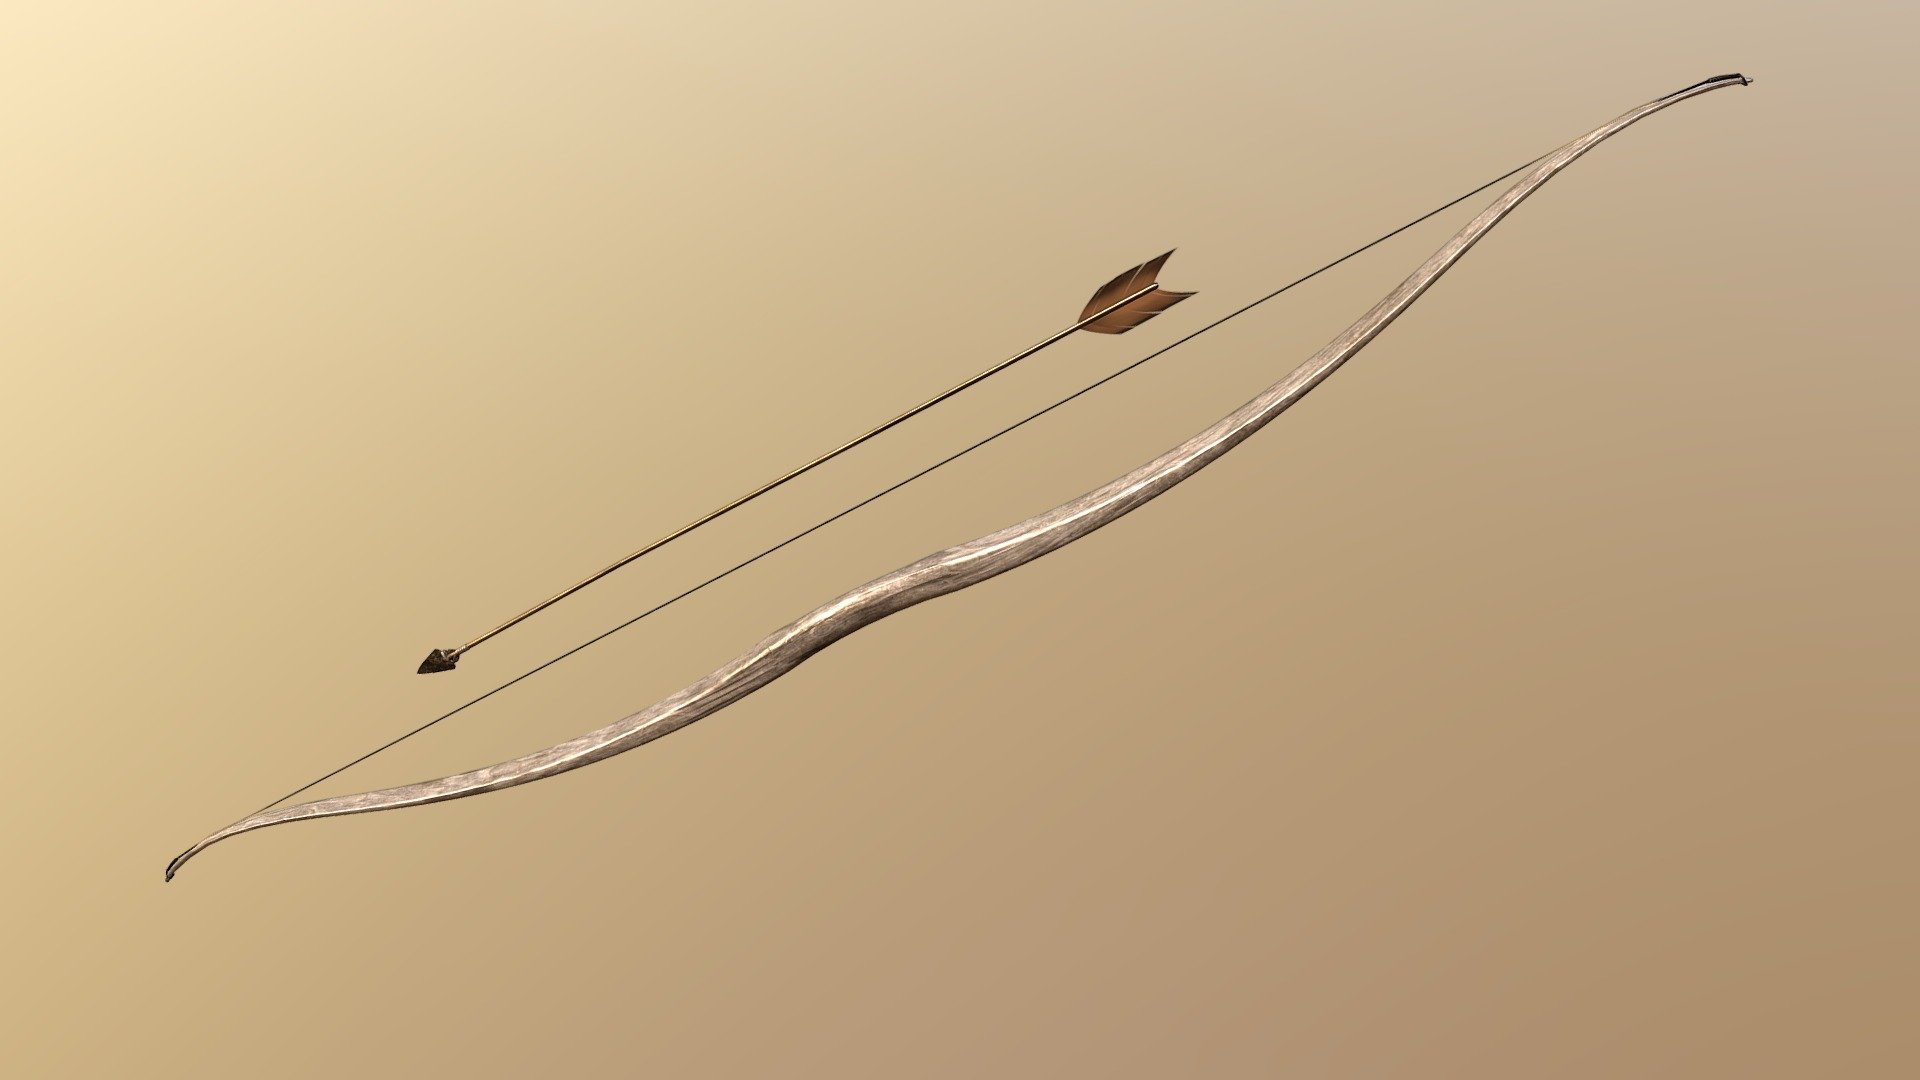 Game ready bow and arrow with 8k pbr textures.
The arrow has a flintstone arrowhead 3d model